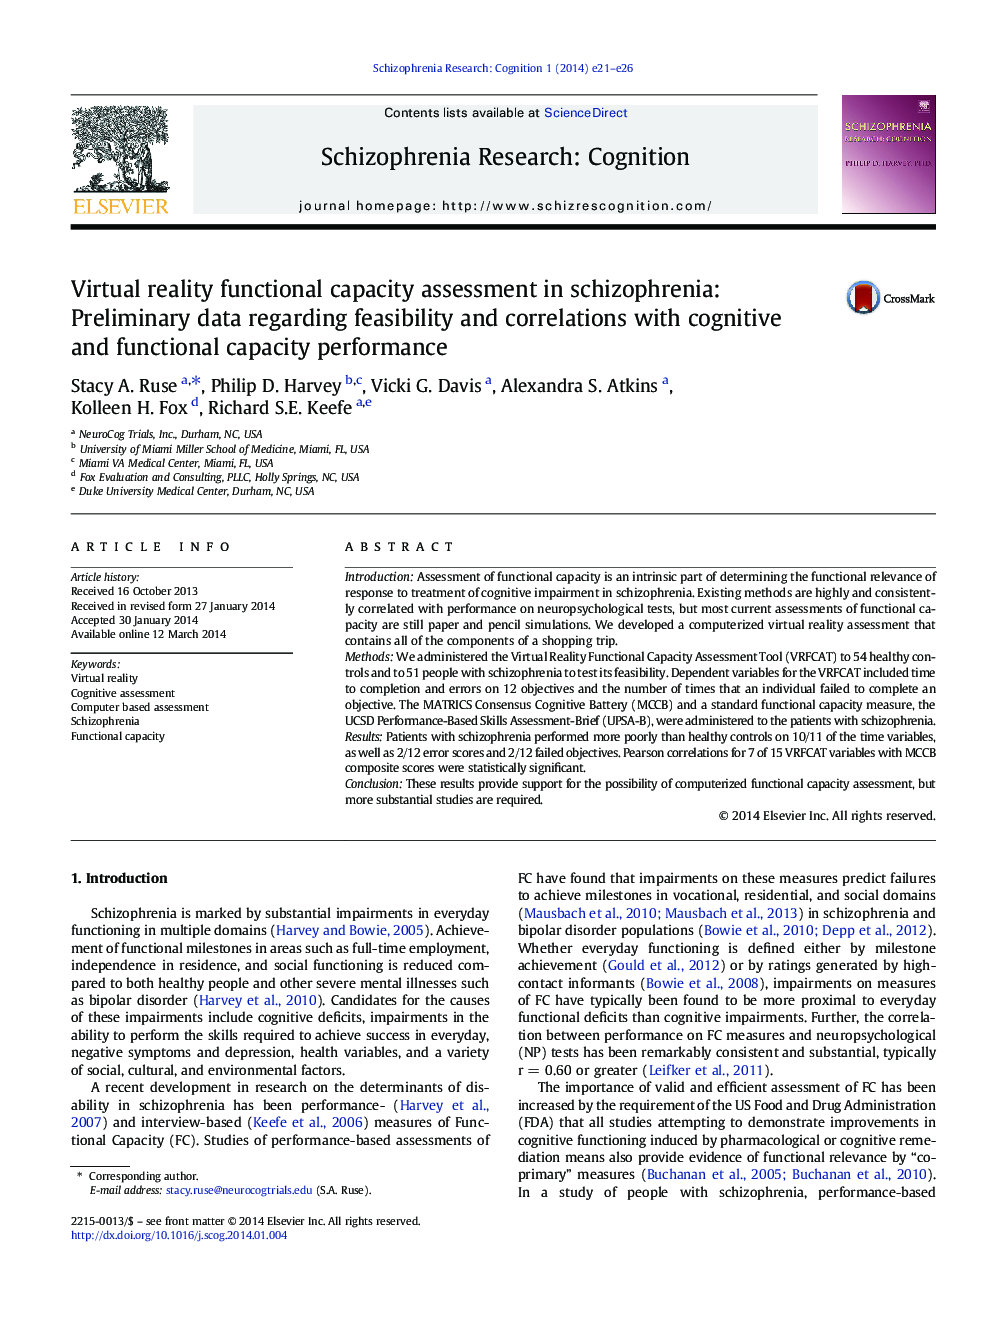 ارزیابی ظرفیت عملیاتی واقعیت مجازی در اسکیزوفرنی: داده های مقدماتی در مورد امکان سنجی و همبستگی با عملکرد ظرفیت شناختی و عملکردی 